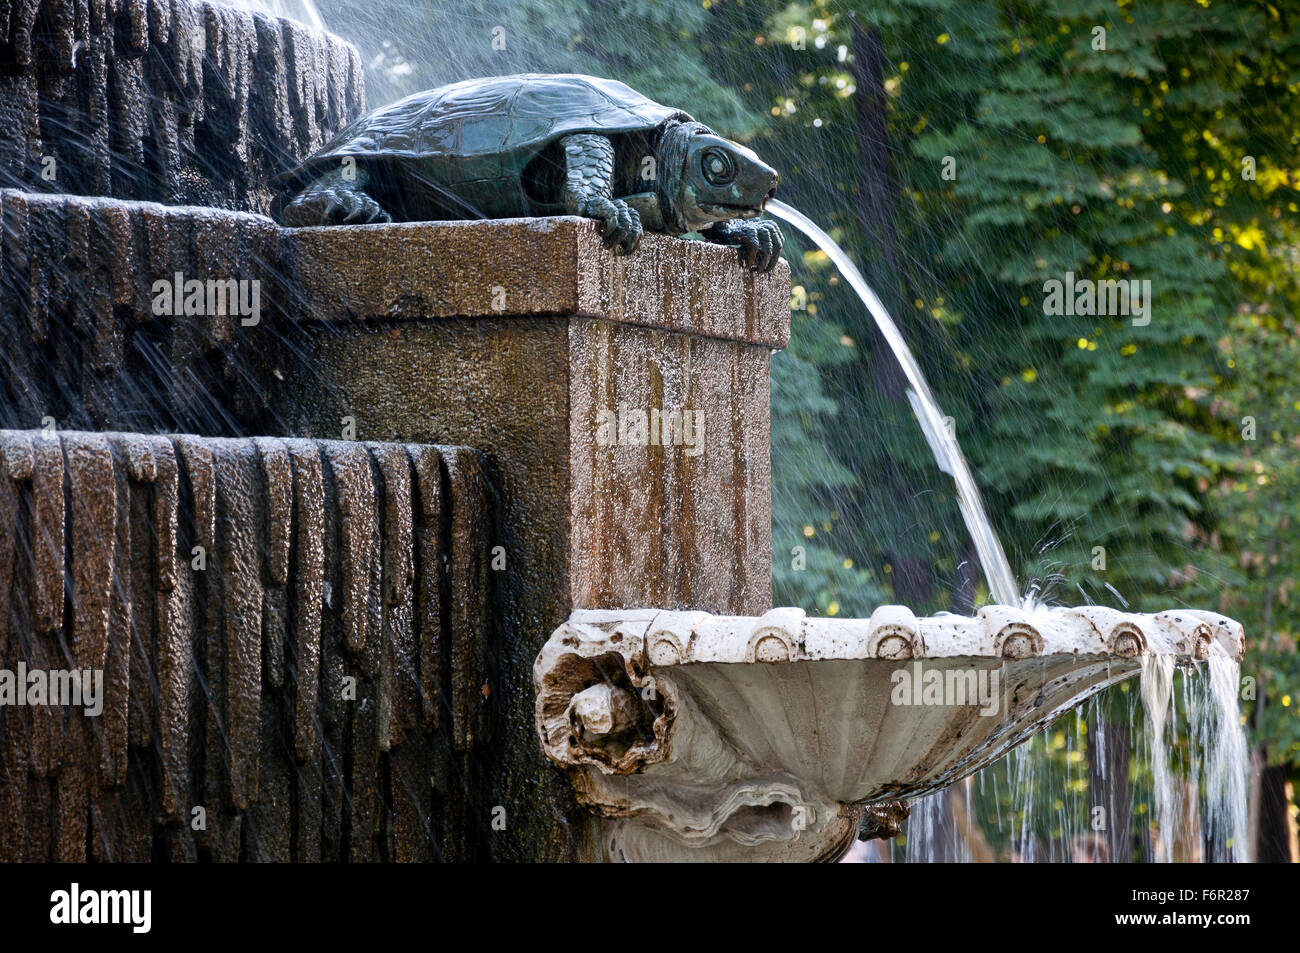 Dettaglio delle tartarughe di acqua dolce Fontana nel parco del Retiro di Madrid, Spagna. La fontana fu costruito dall'architetto Francisco Javier de Foto Stock